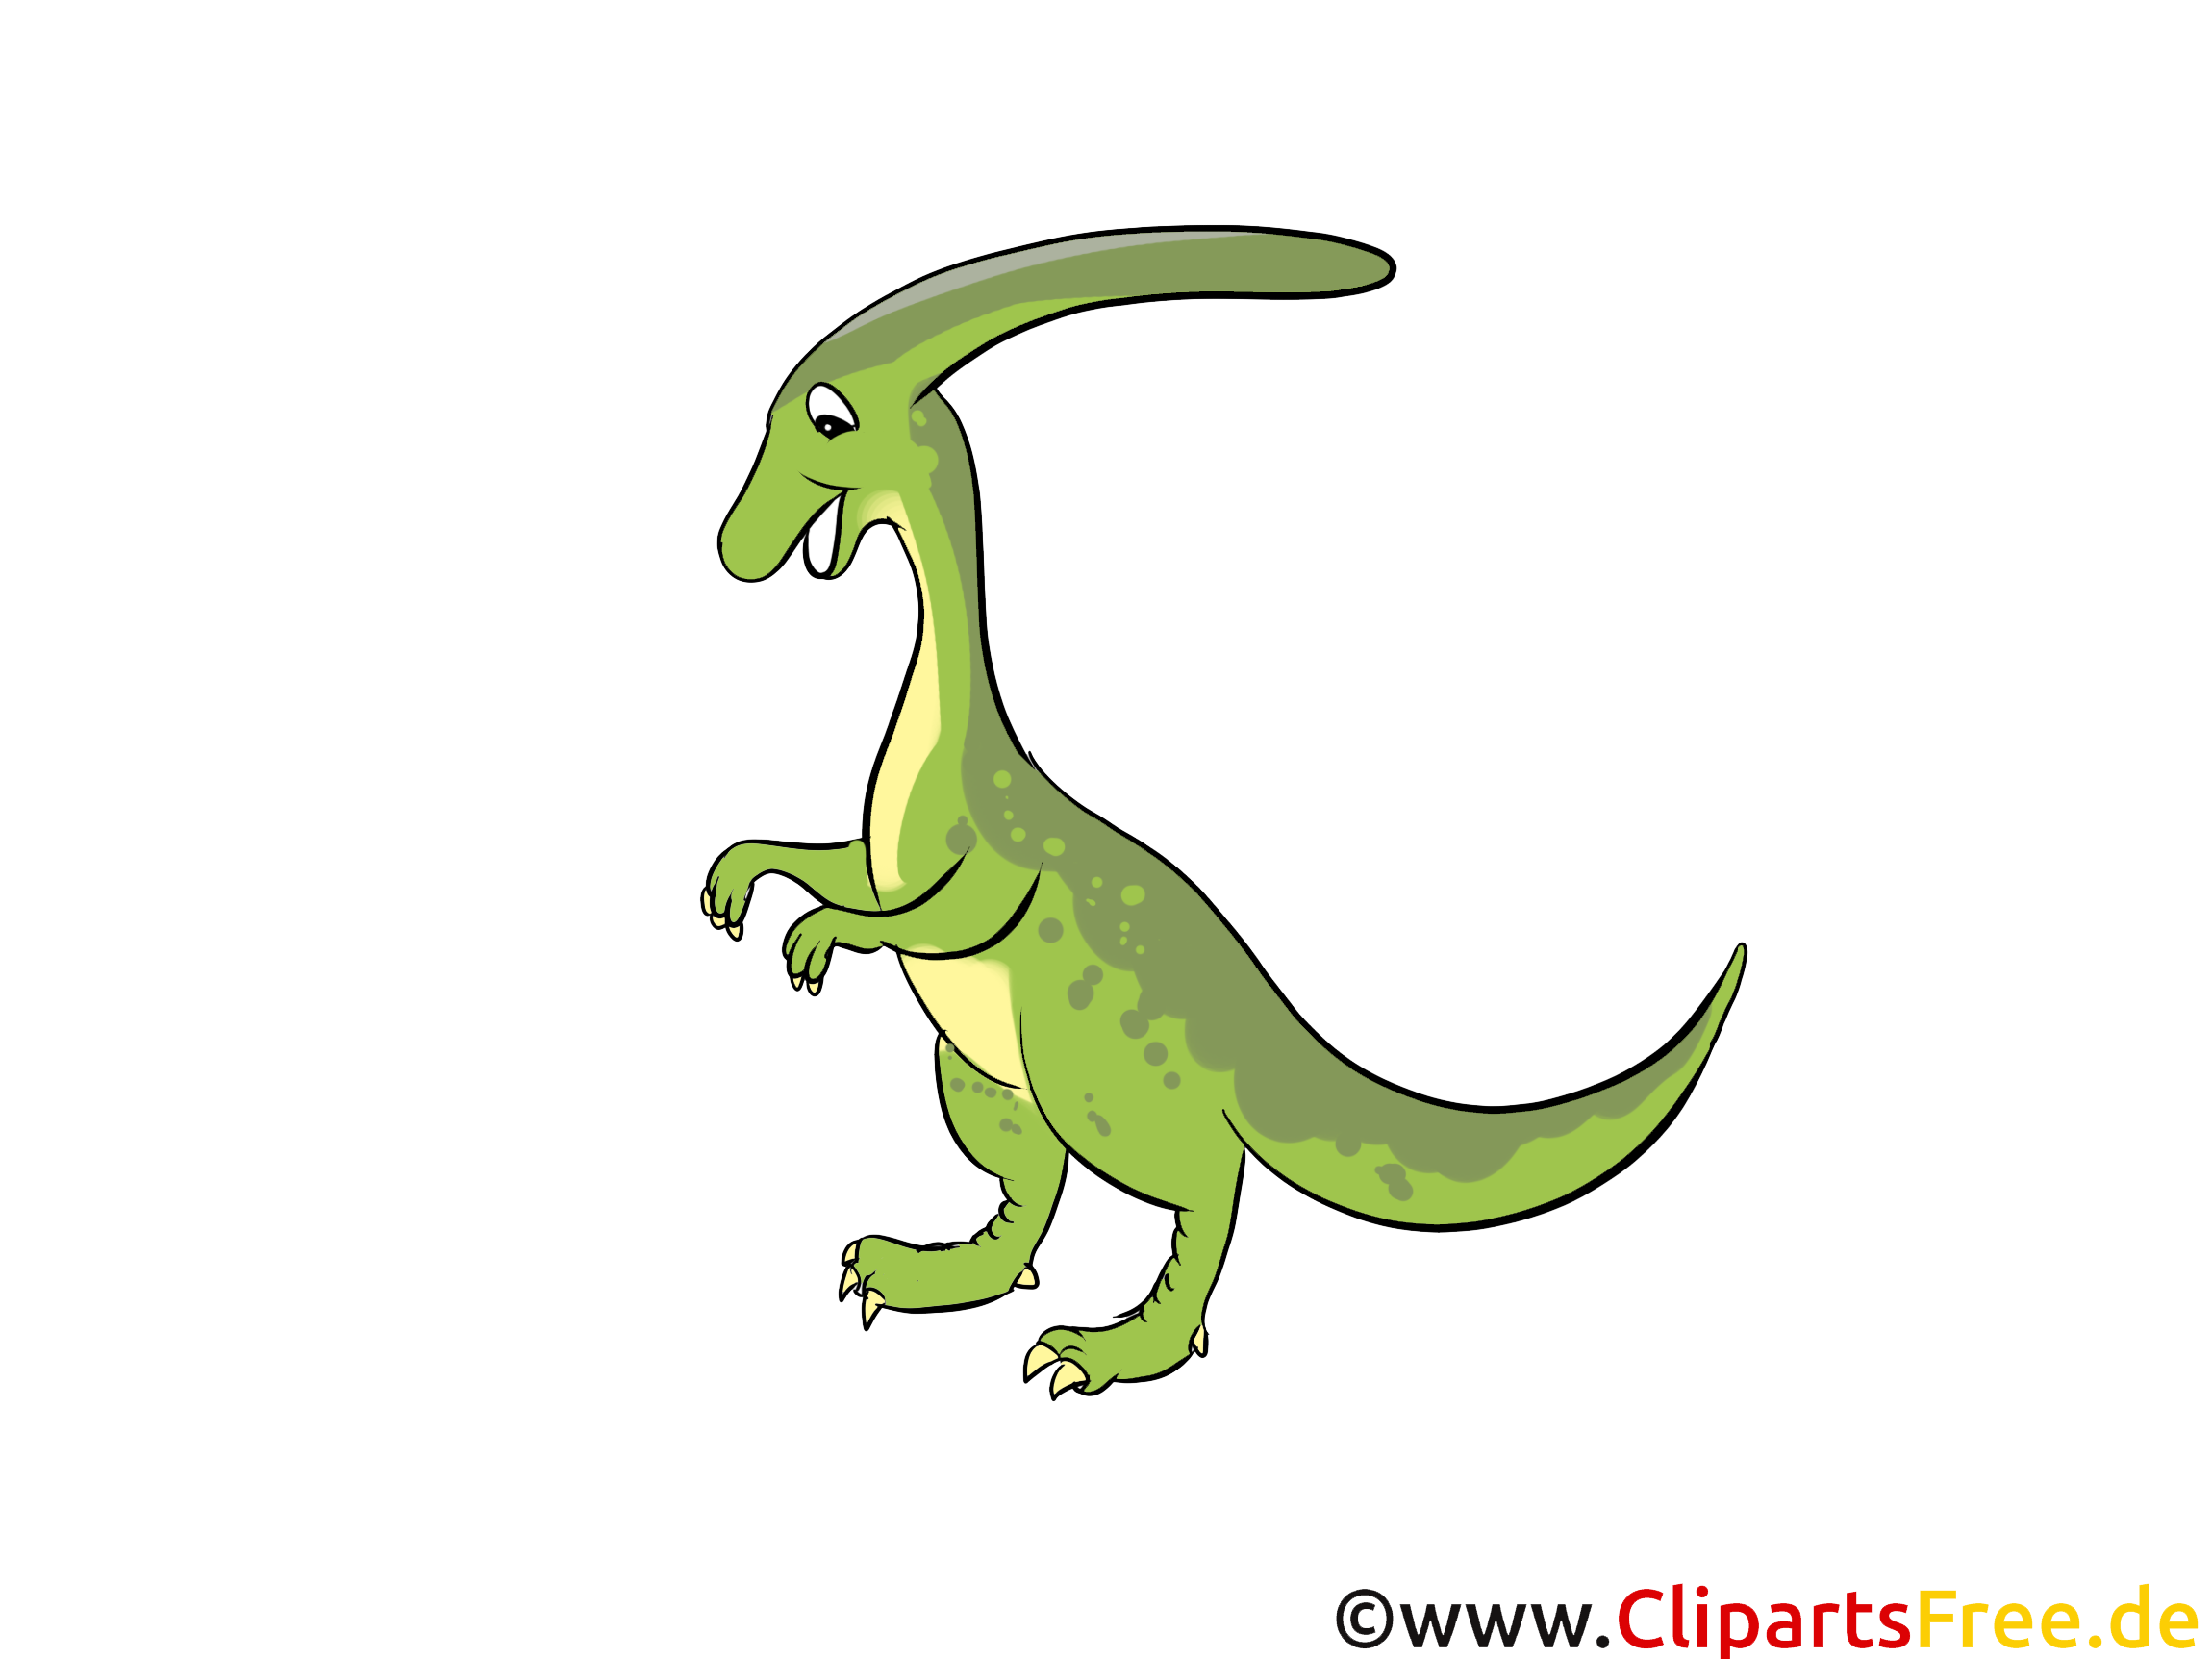 Dinosaure image à télécharger gratuite